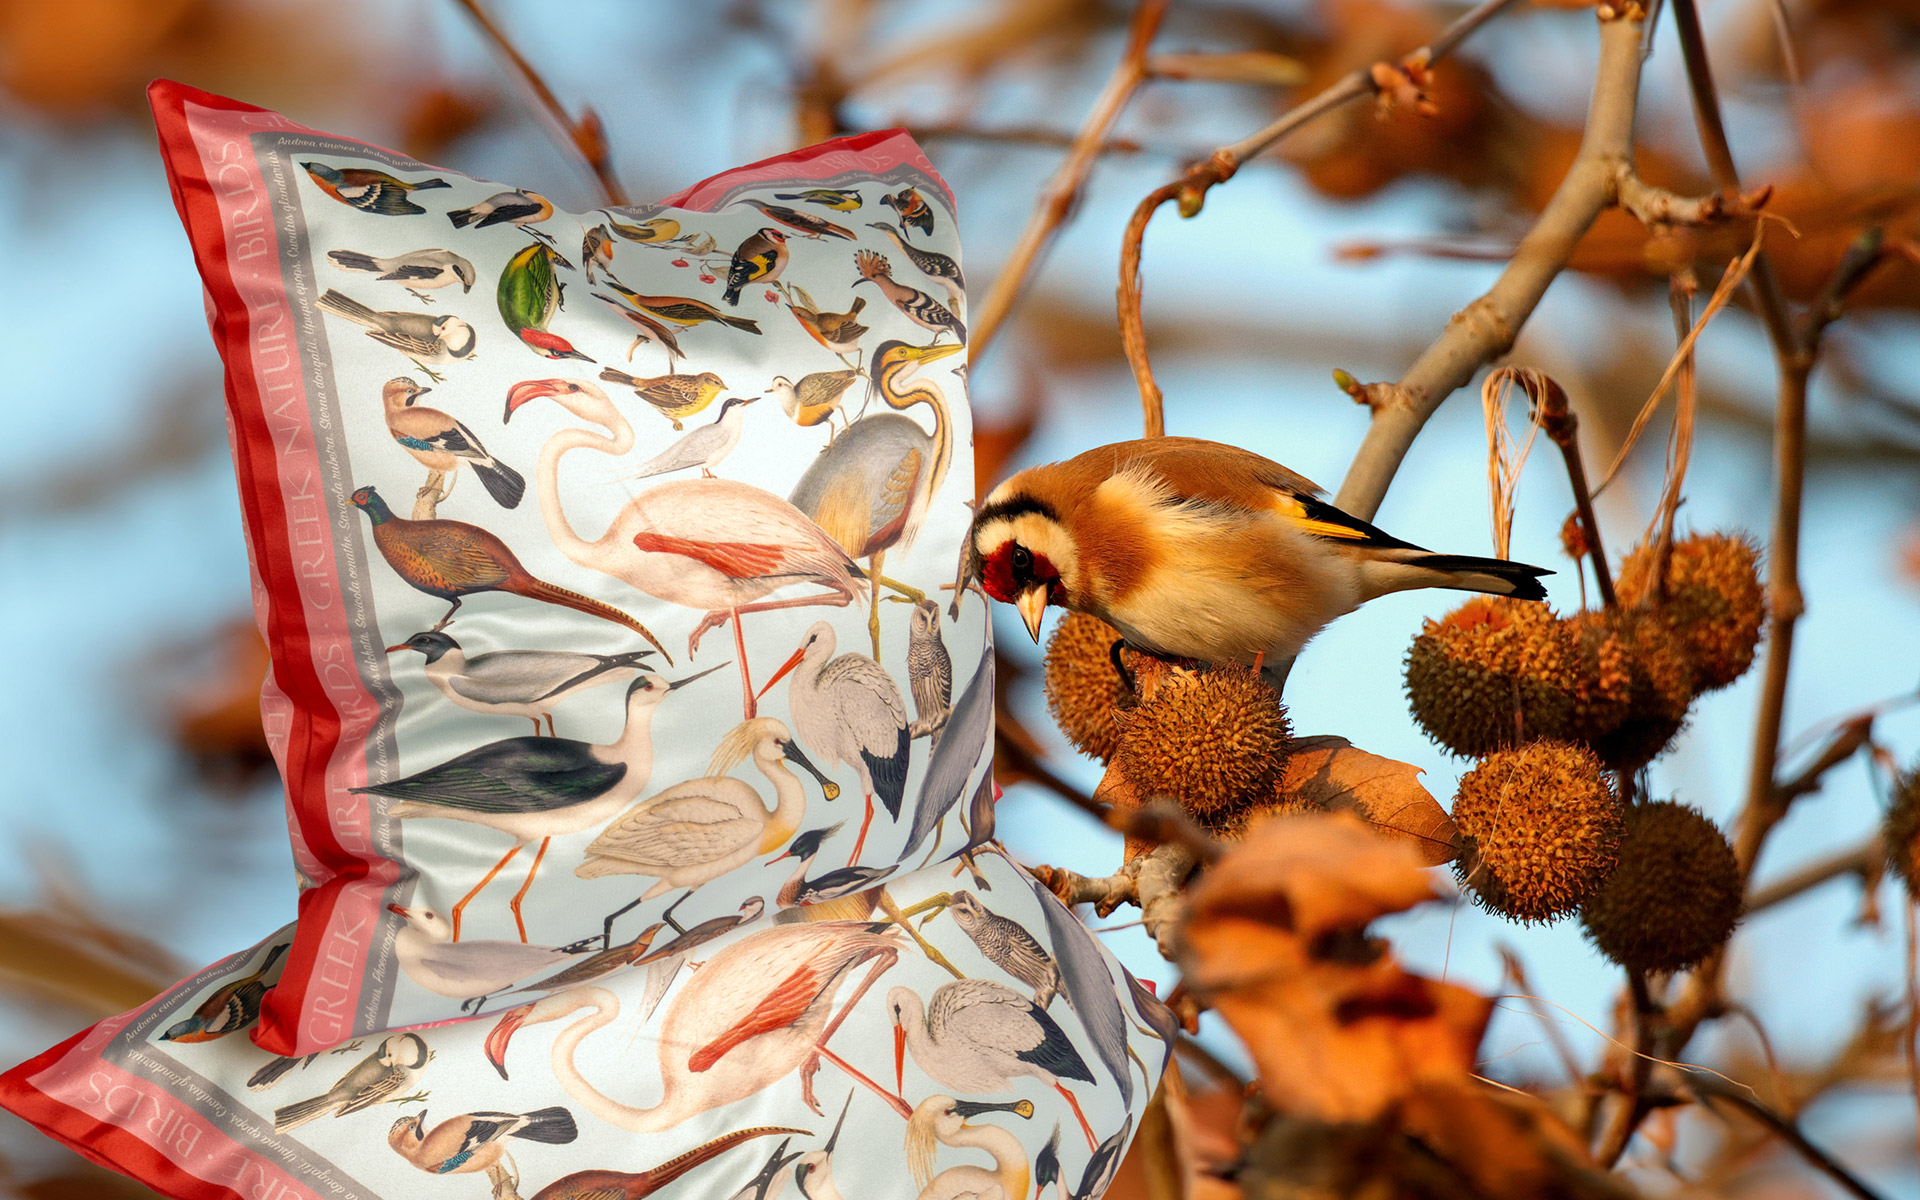 Bird perched beside bird-patterned pillow outdoors.